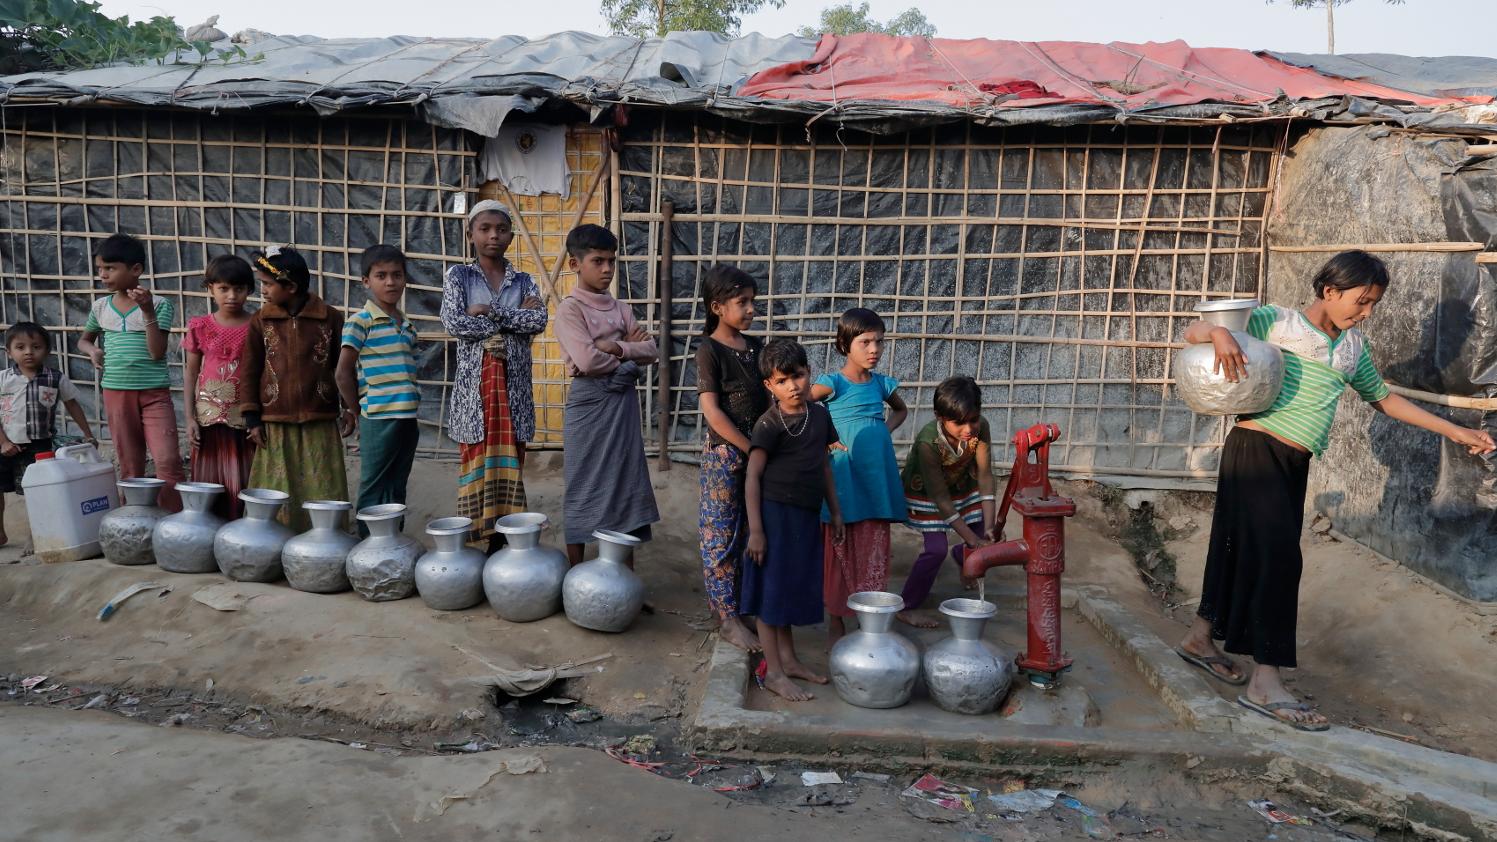 Kinder stehen in einem Flüchtlingslager für Wasser an.